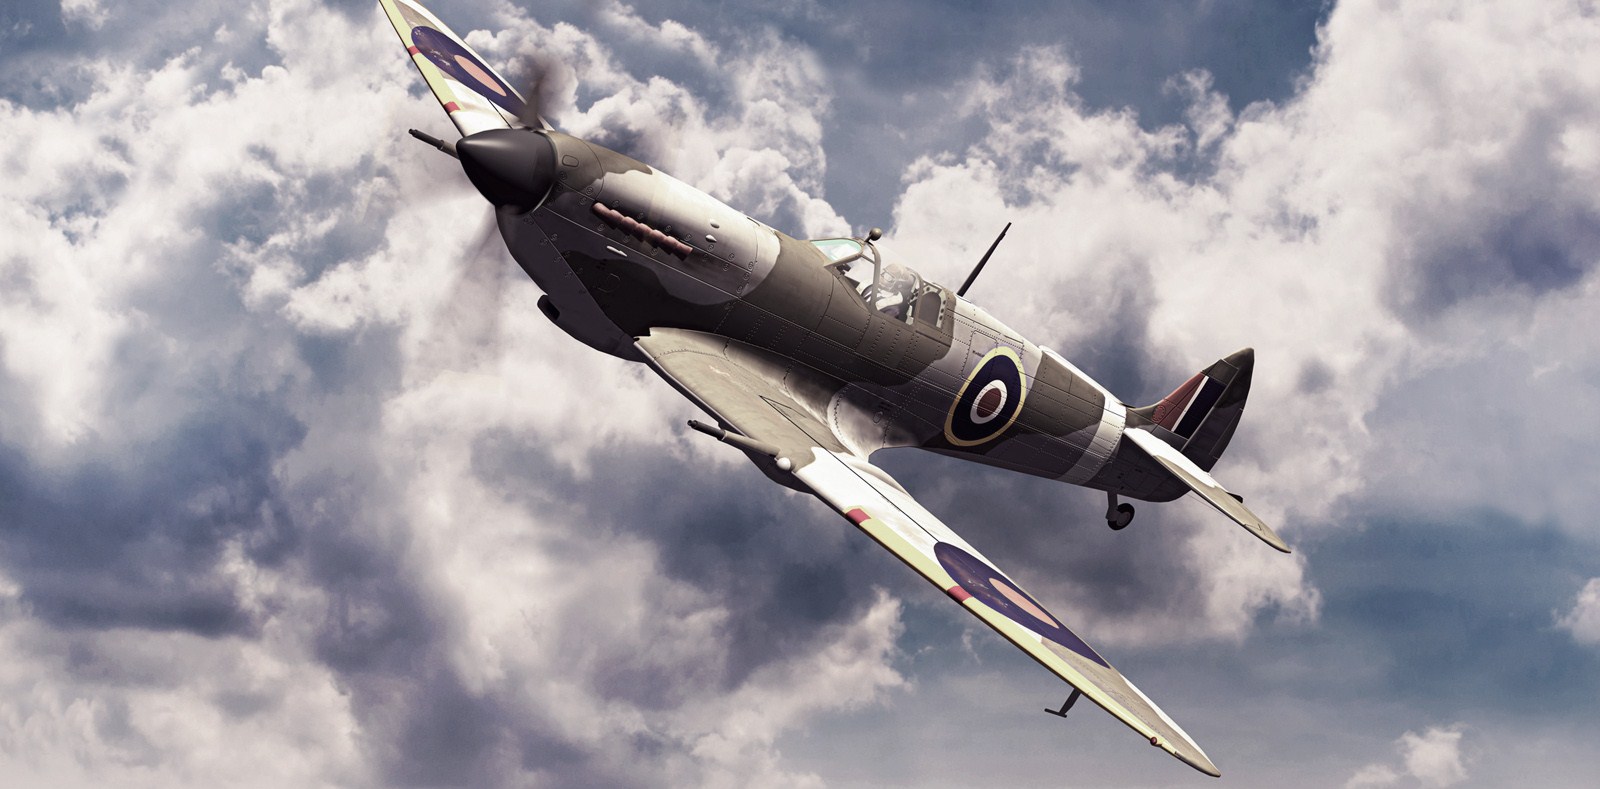 Spitfire II for blog